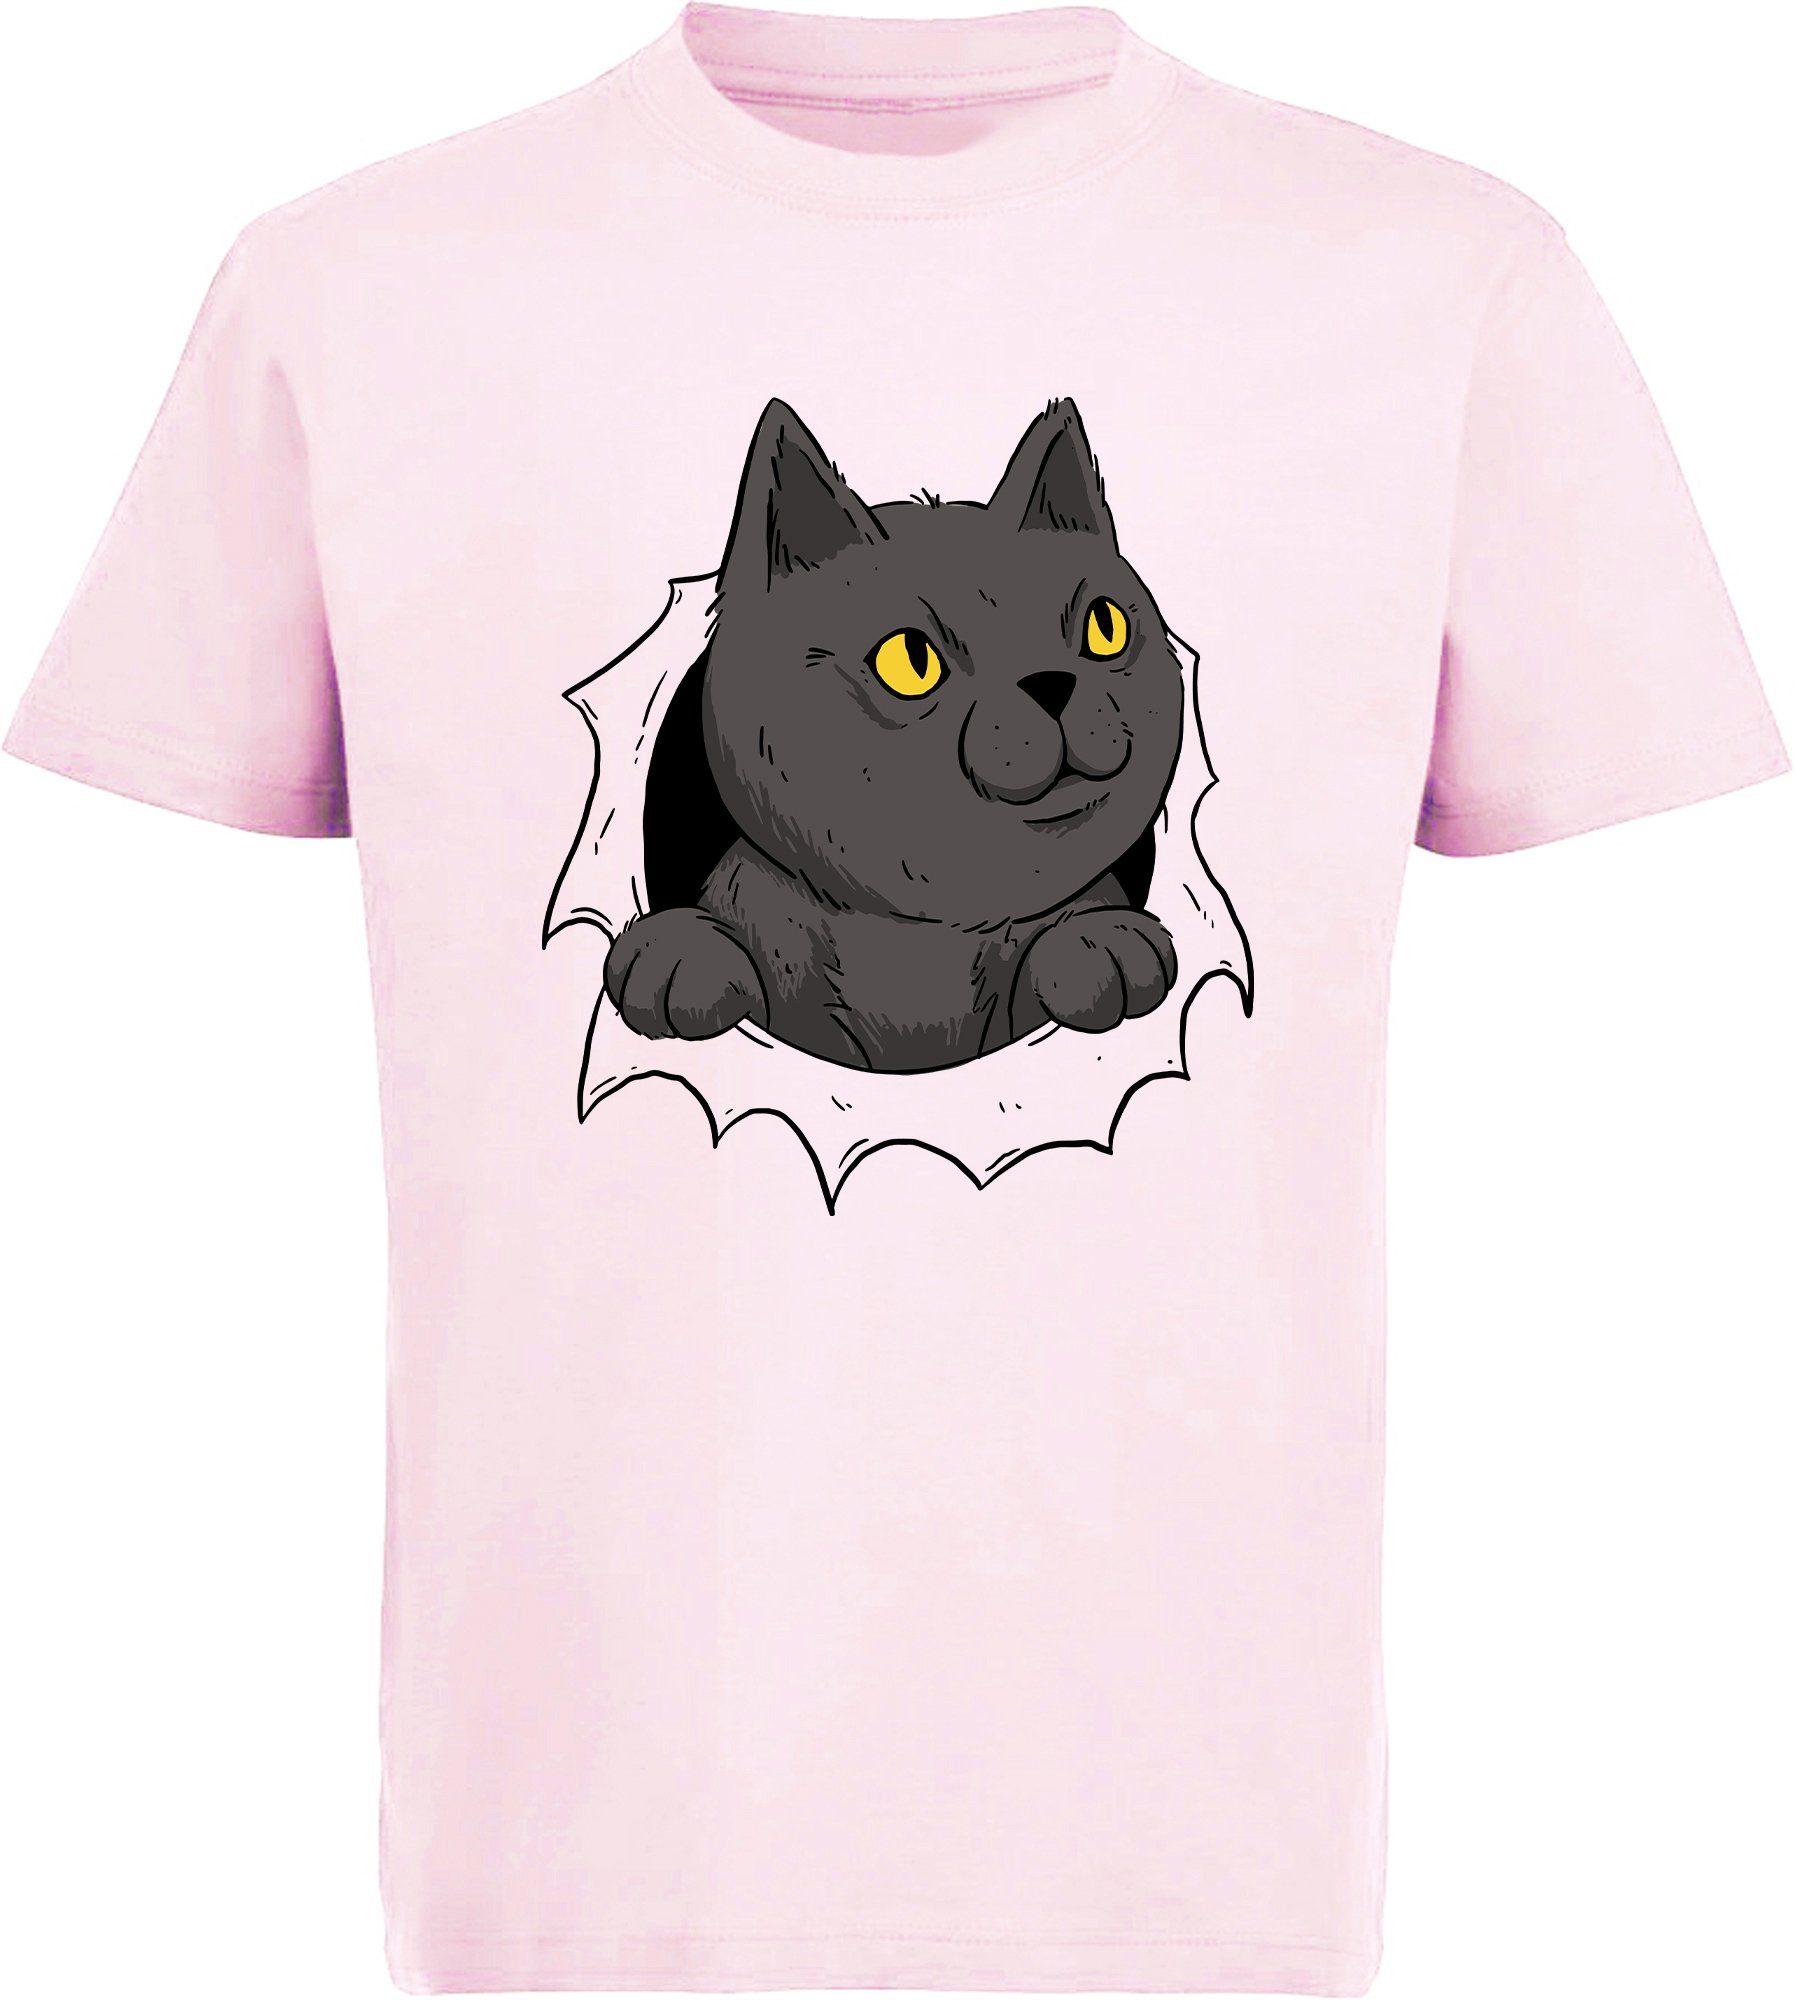 MyDesign24 Print-Shirt bedrucktes Kinder Mädchen T-Shirt Katze die aus einem Loch kommt Baumwollshirt mit Katze, weiß, schwarz, rot, rosa, i105 | T-Shirts